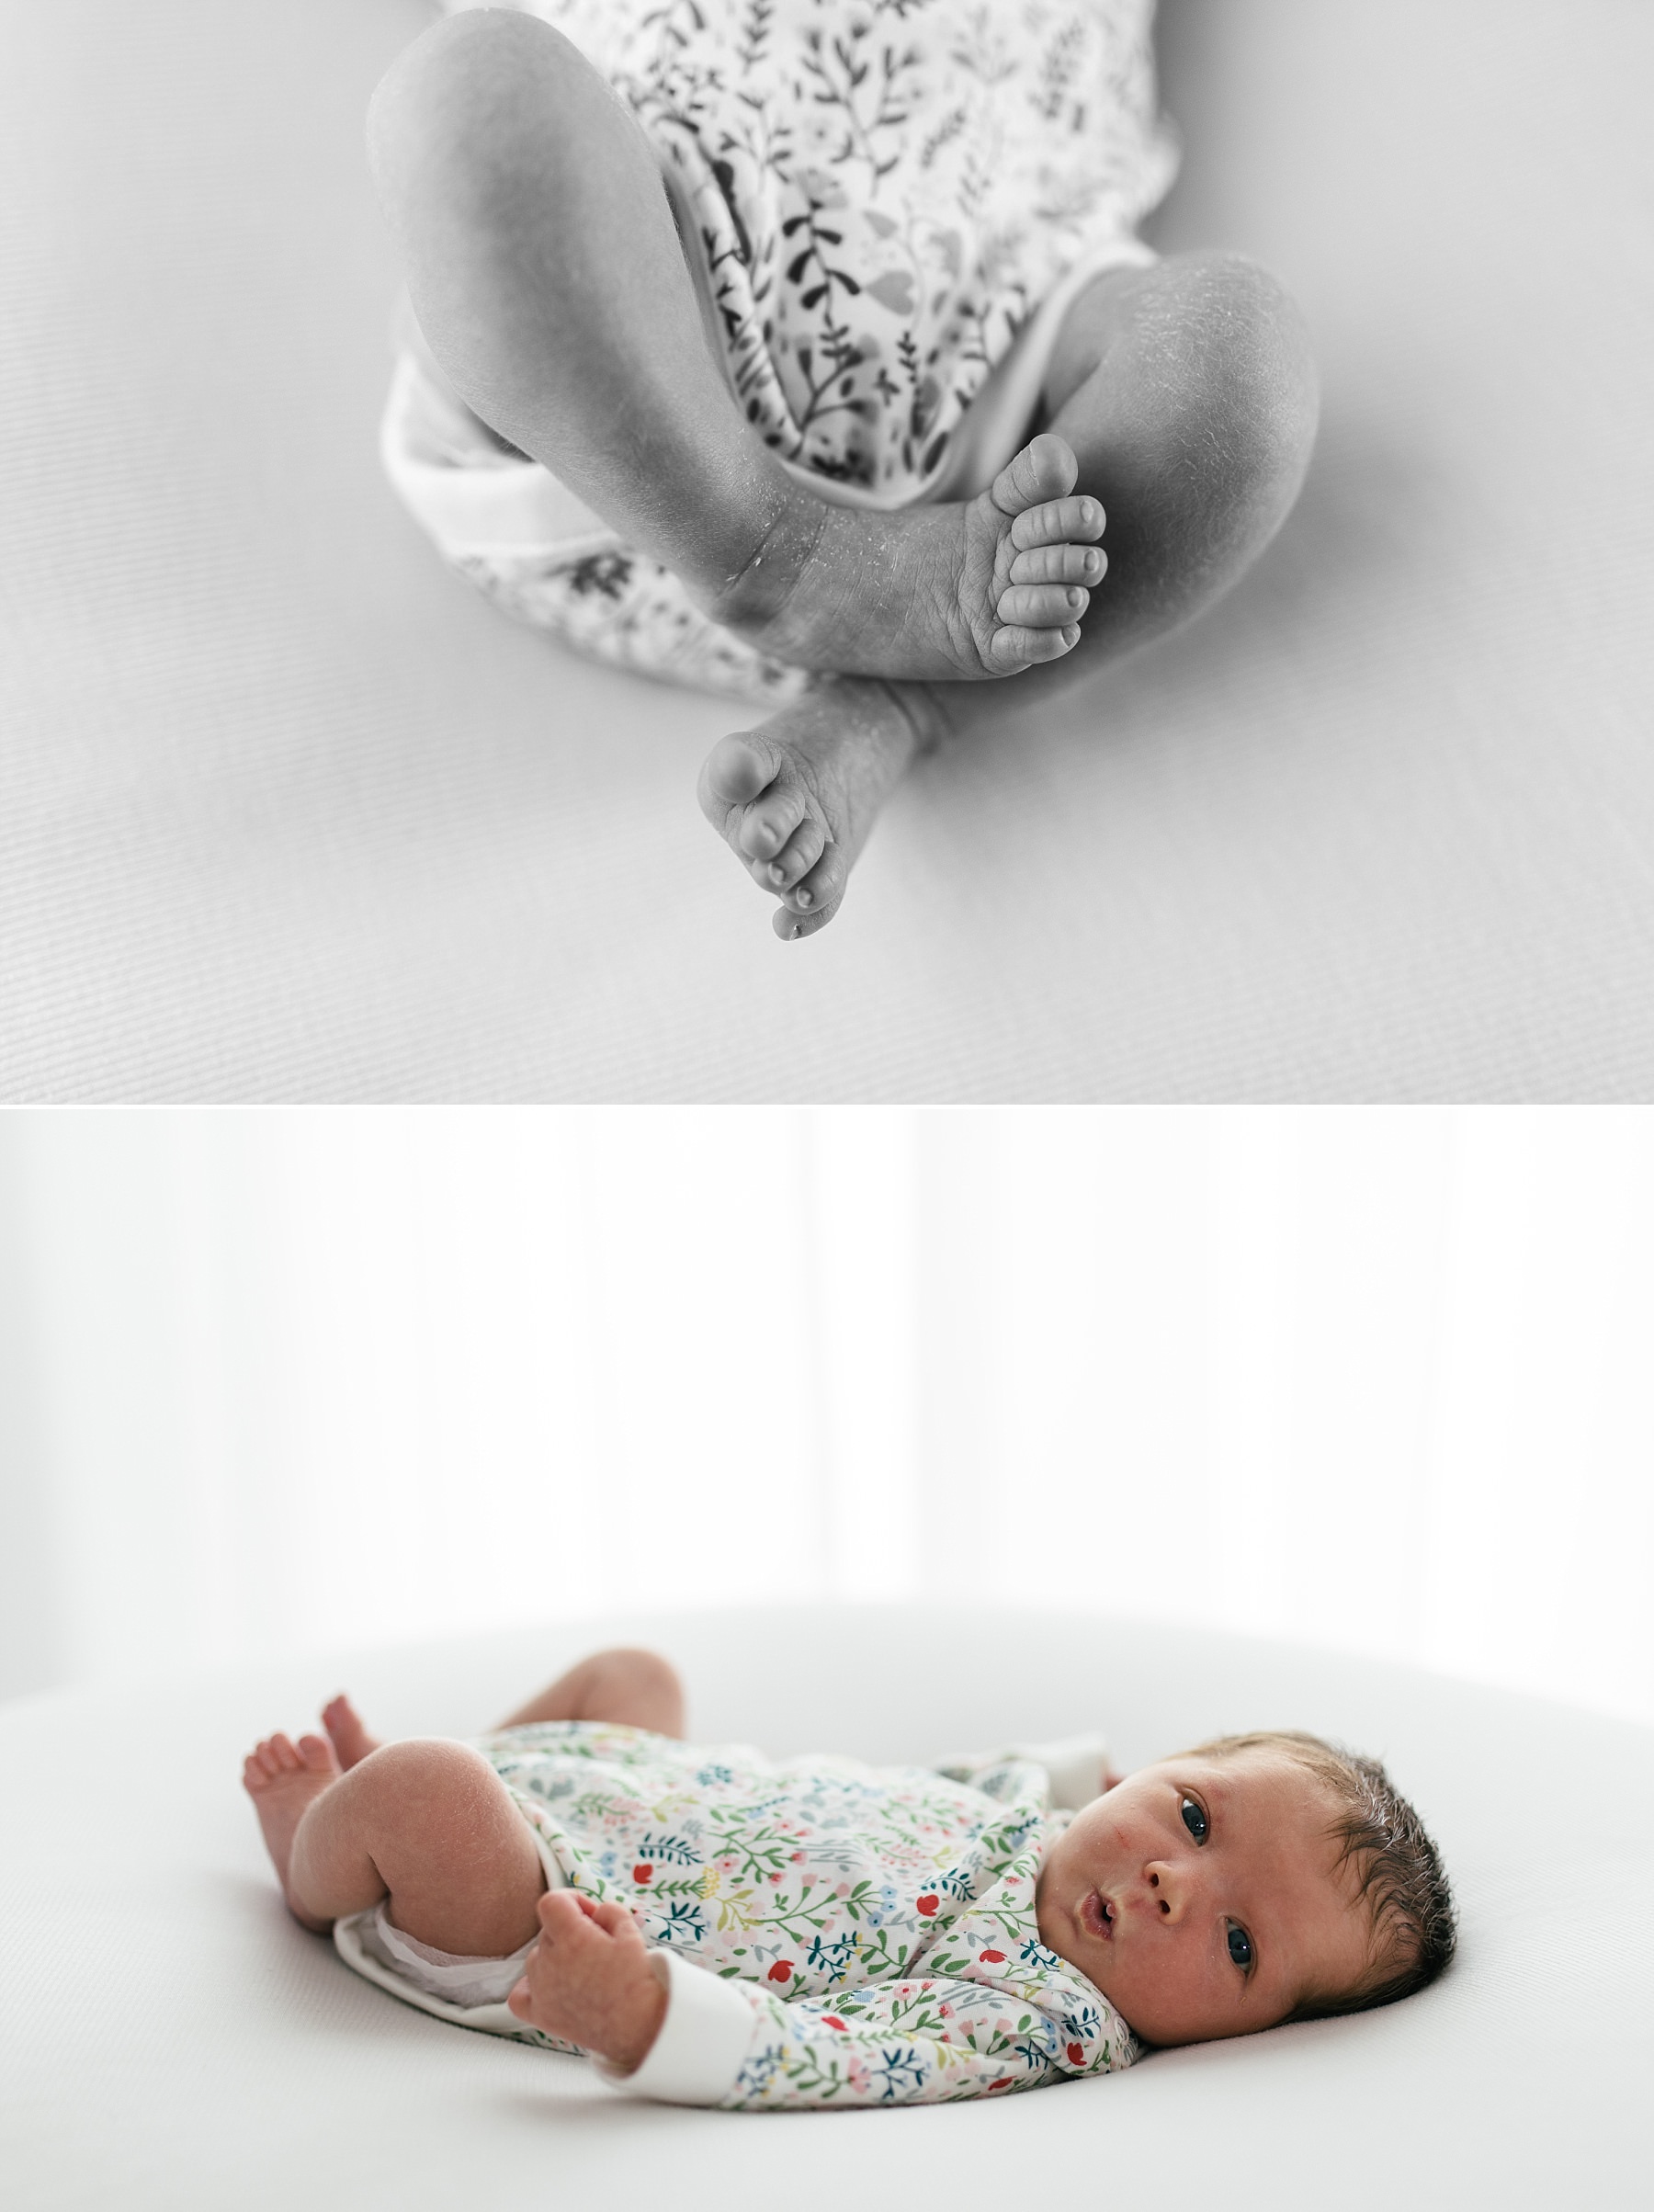 newborn baby feet photoshoot in white studio natural photography